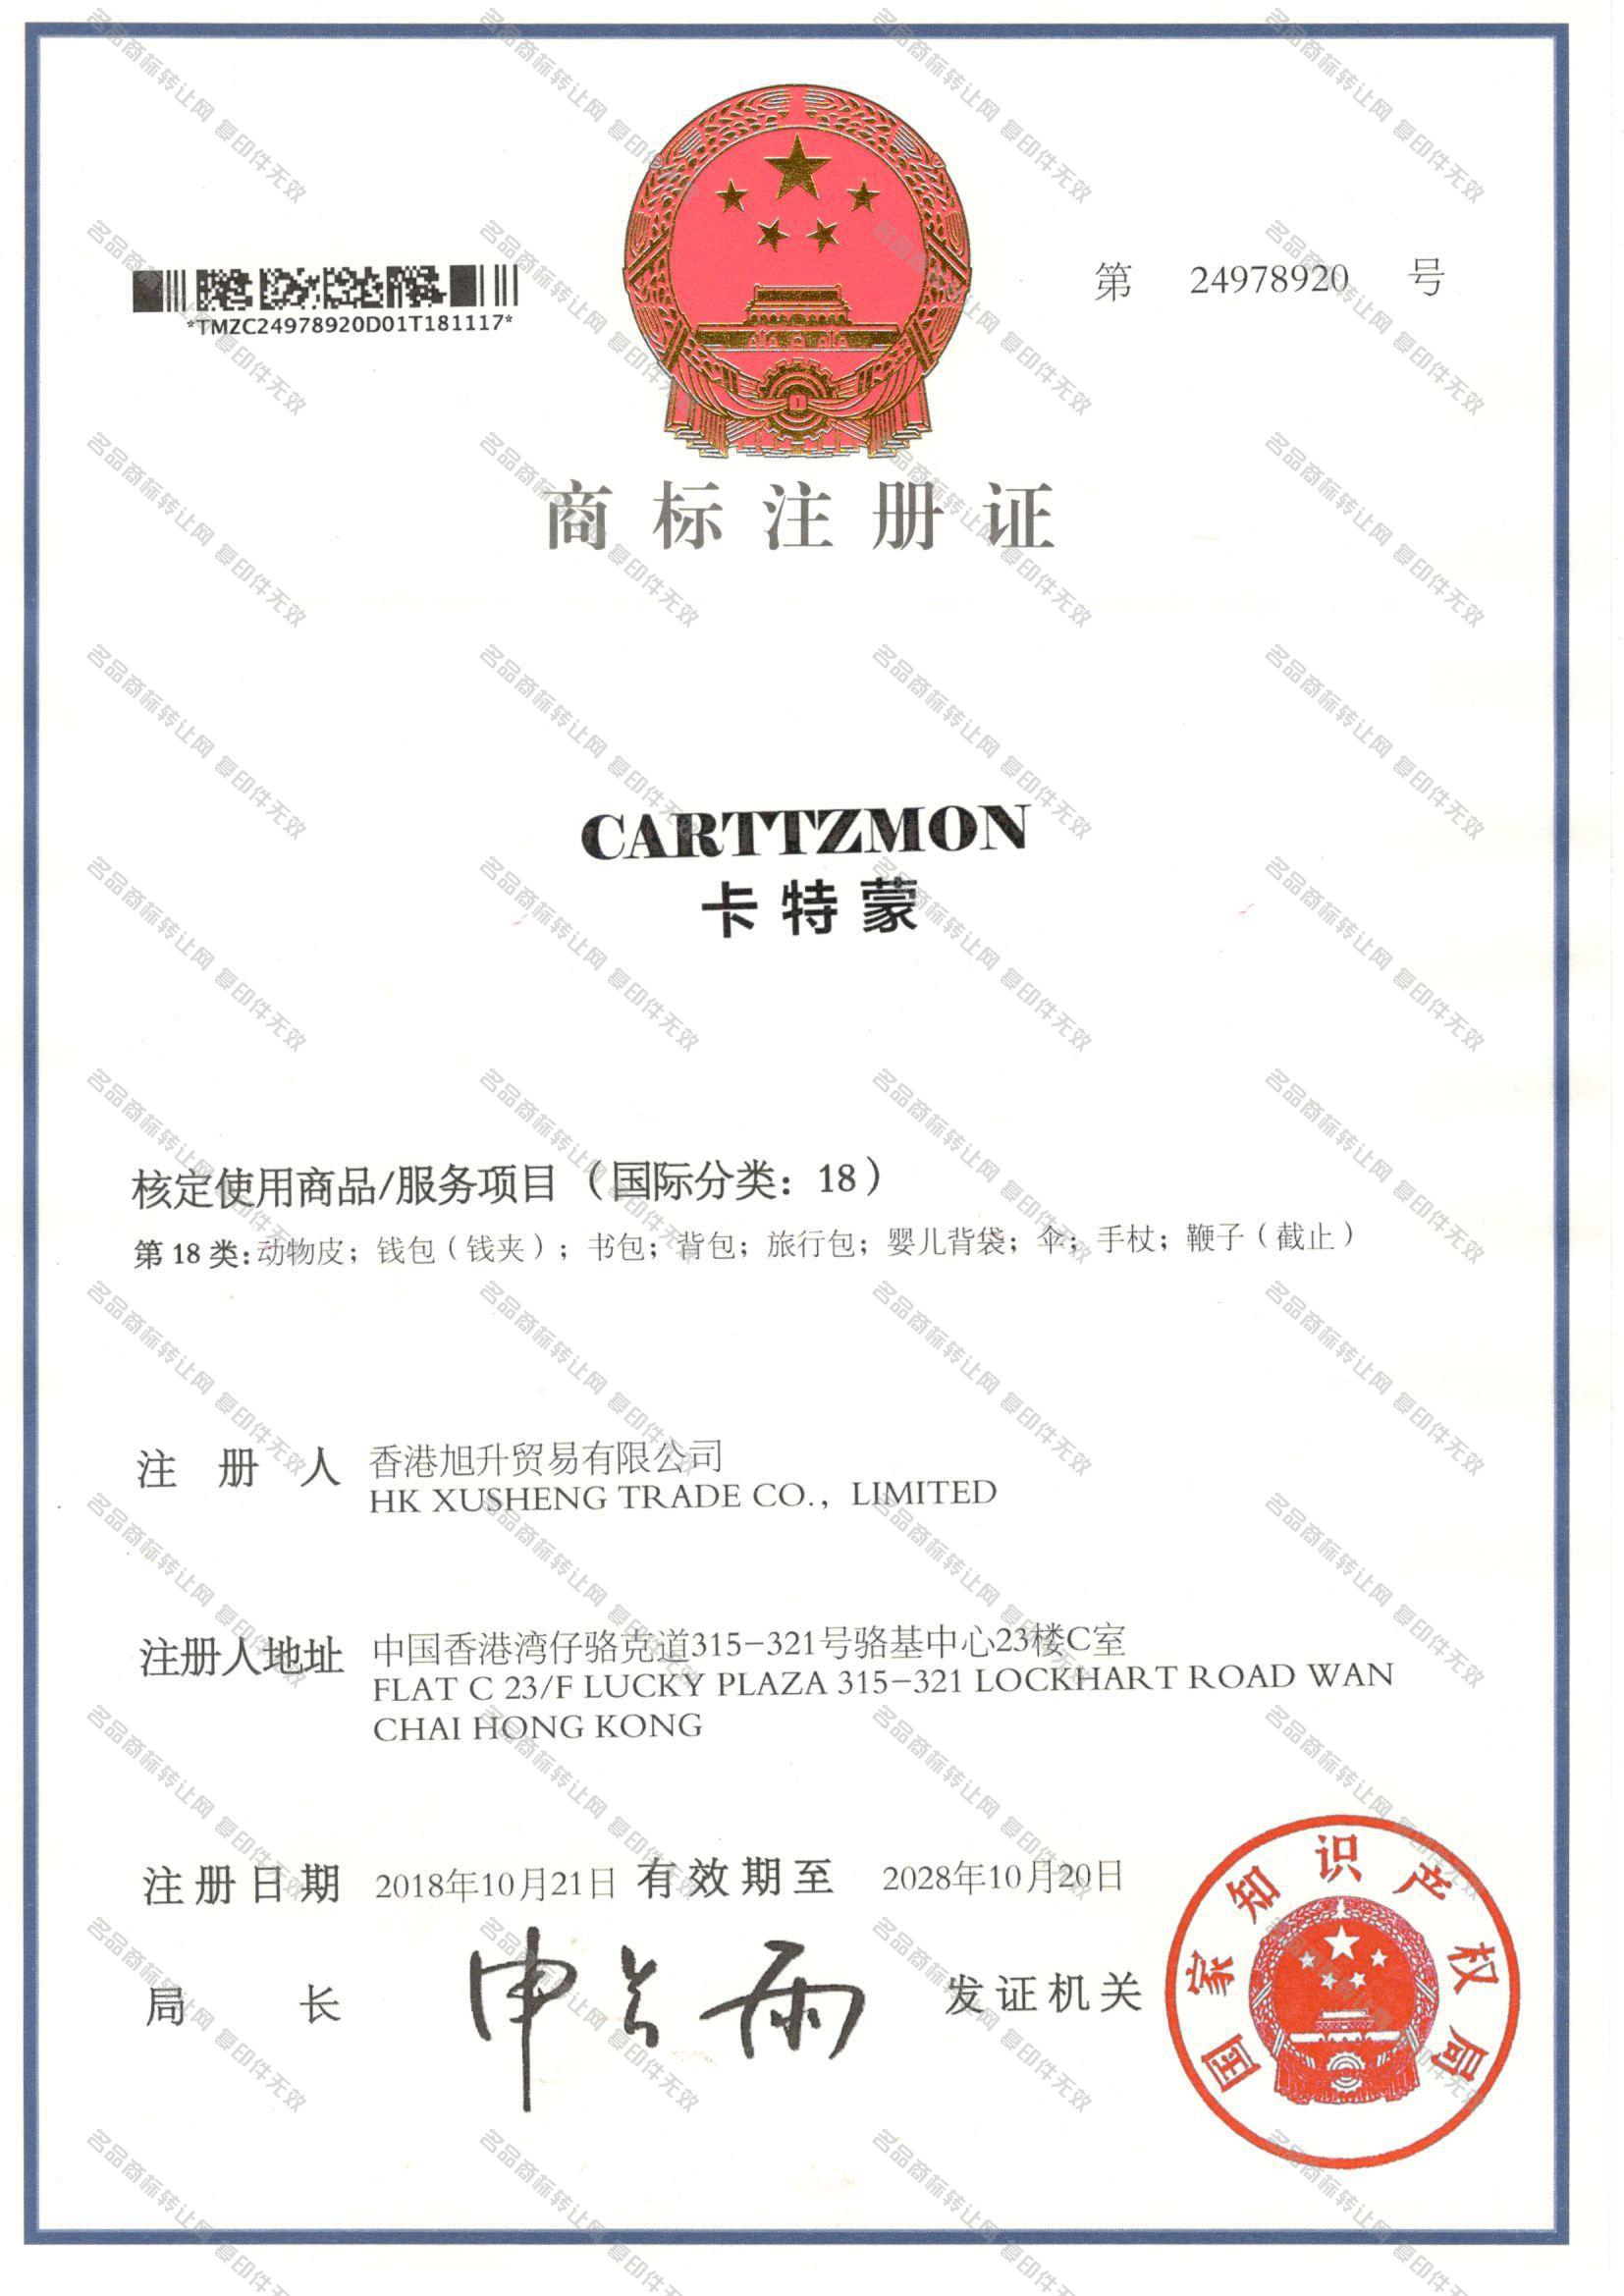 卡特蒙 CARTTZMON注册证